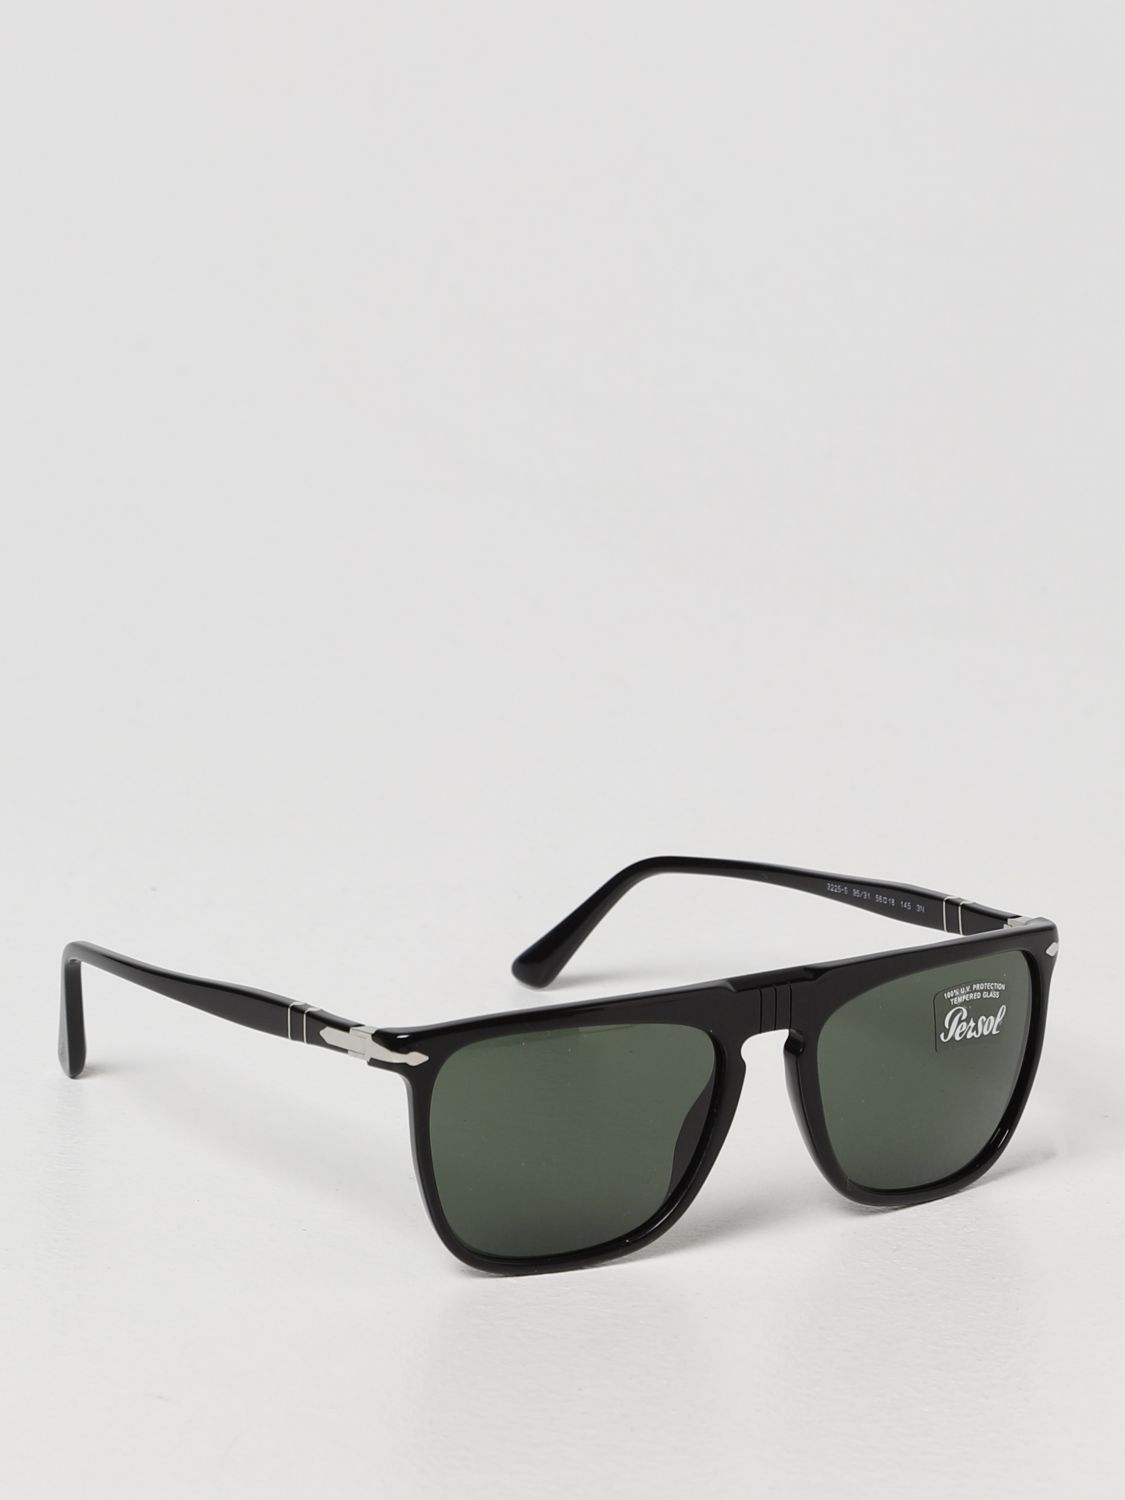 Persol - Men - square-frame Acetate Sunglasses Black